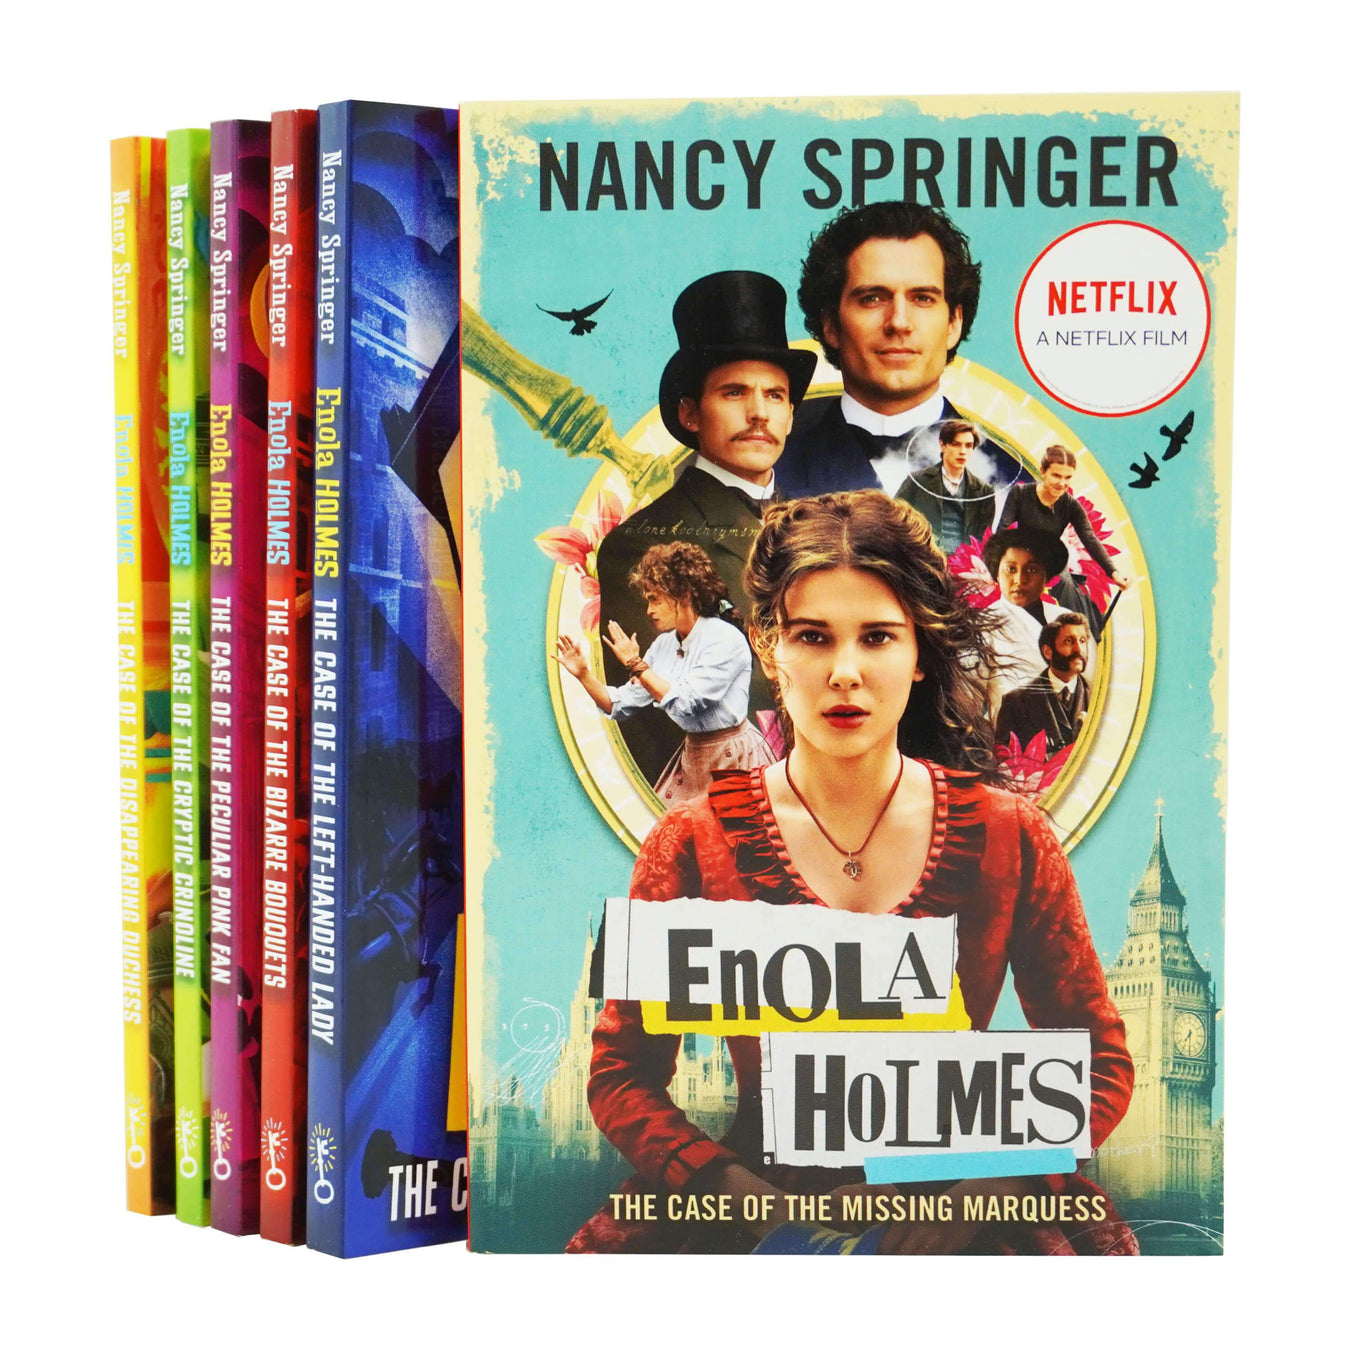 Damaged - Enola Holmes 6 Books Collection Set By Nancy Springer - Ages 9+ - Paperback 9-14 Hot Key Books